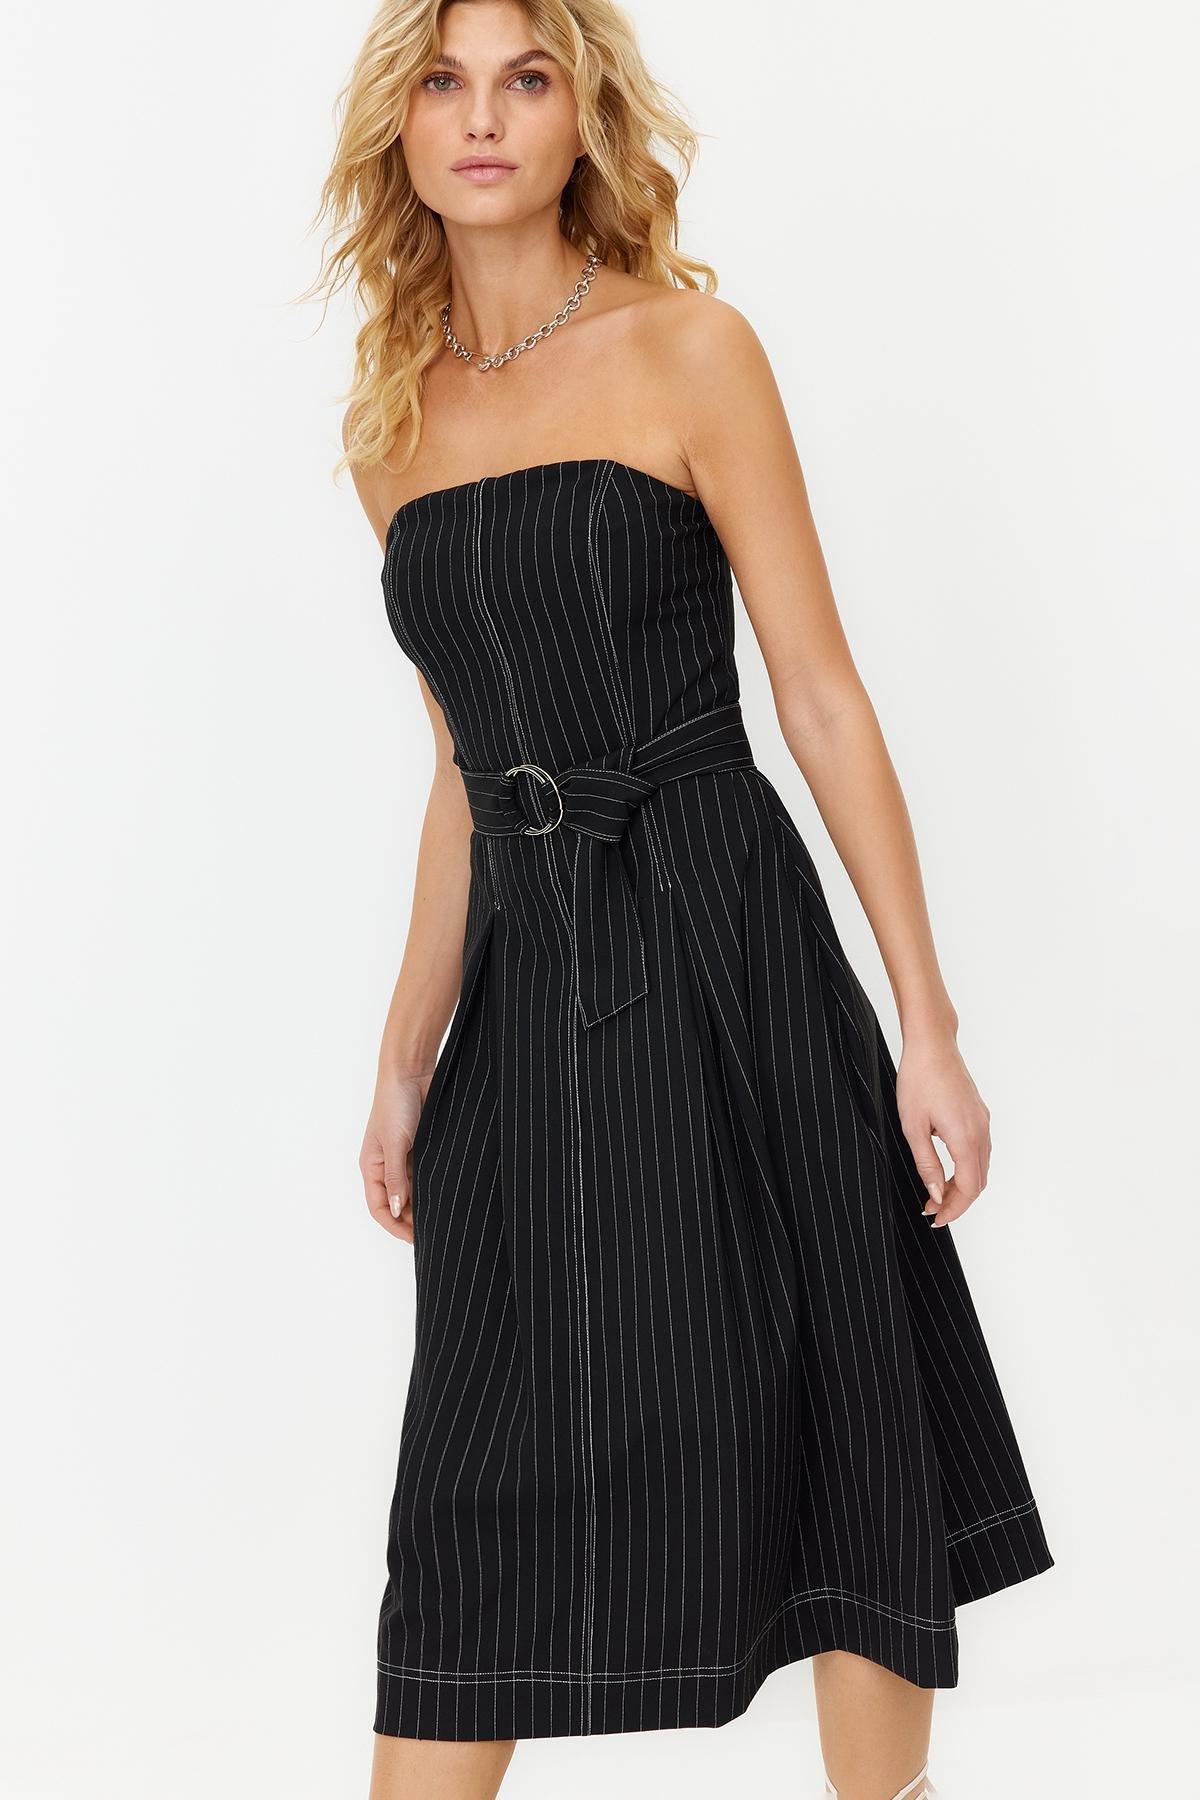 Trendyol - Black Flounce Striped Woven Dress